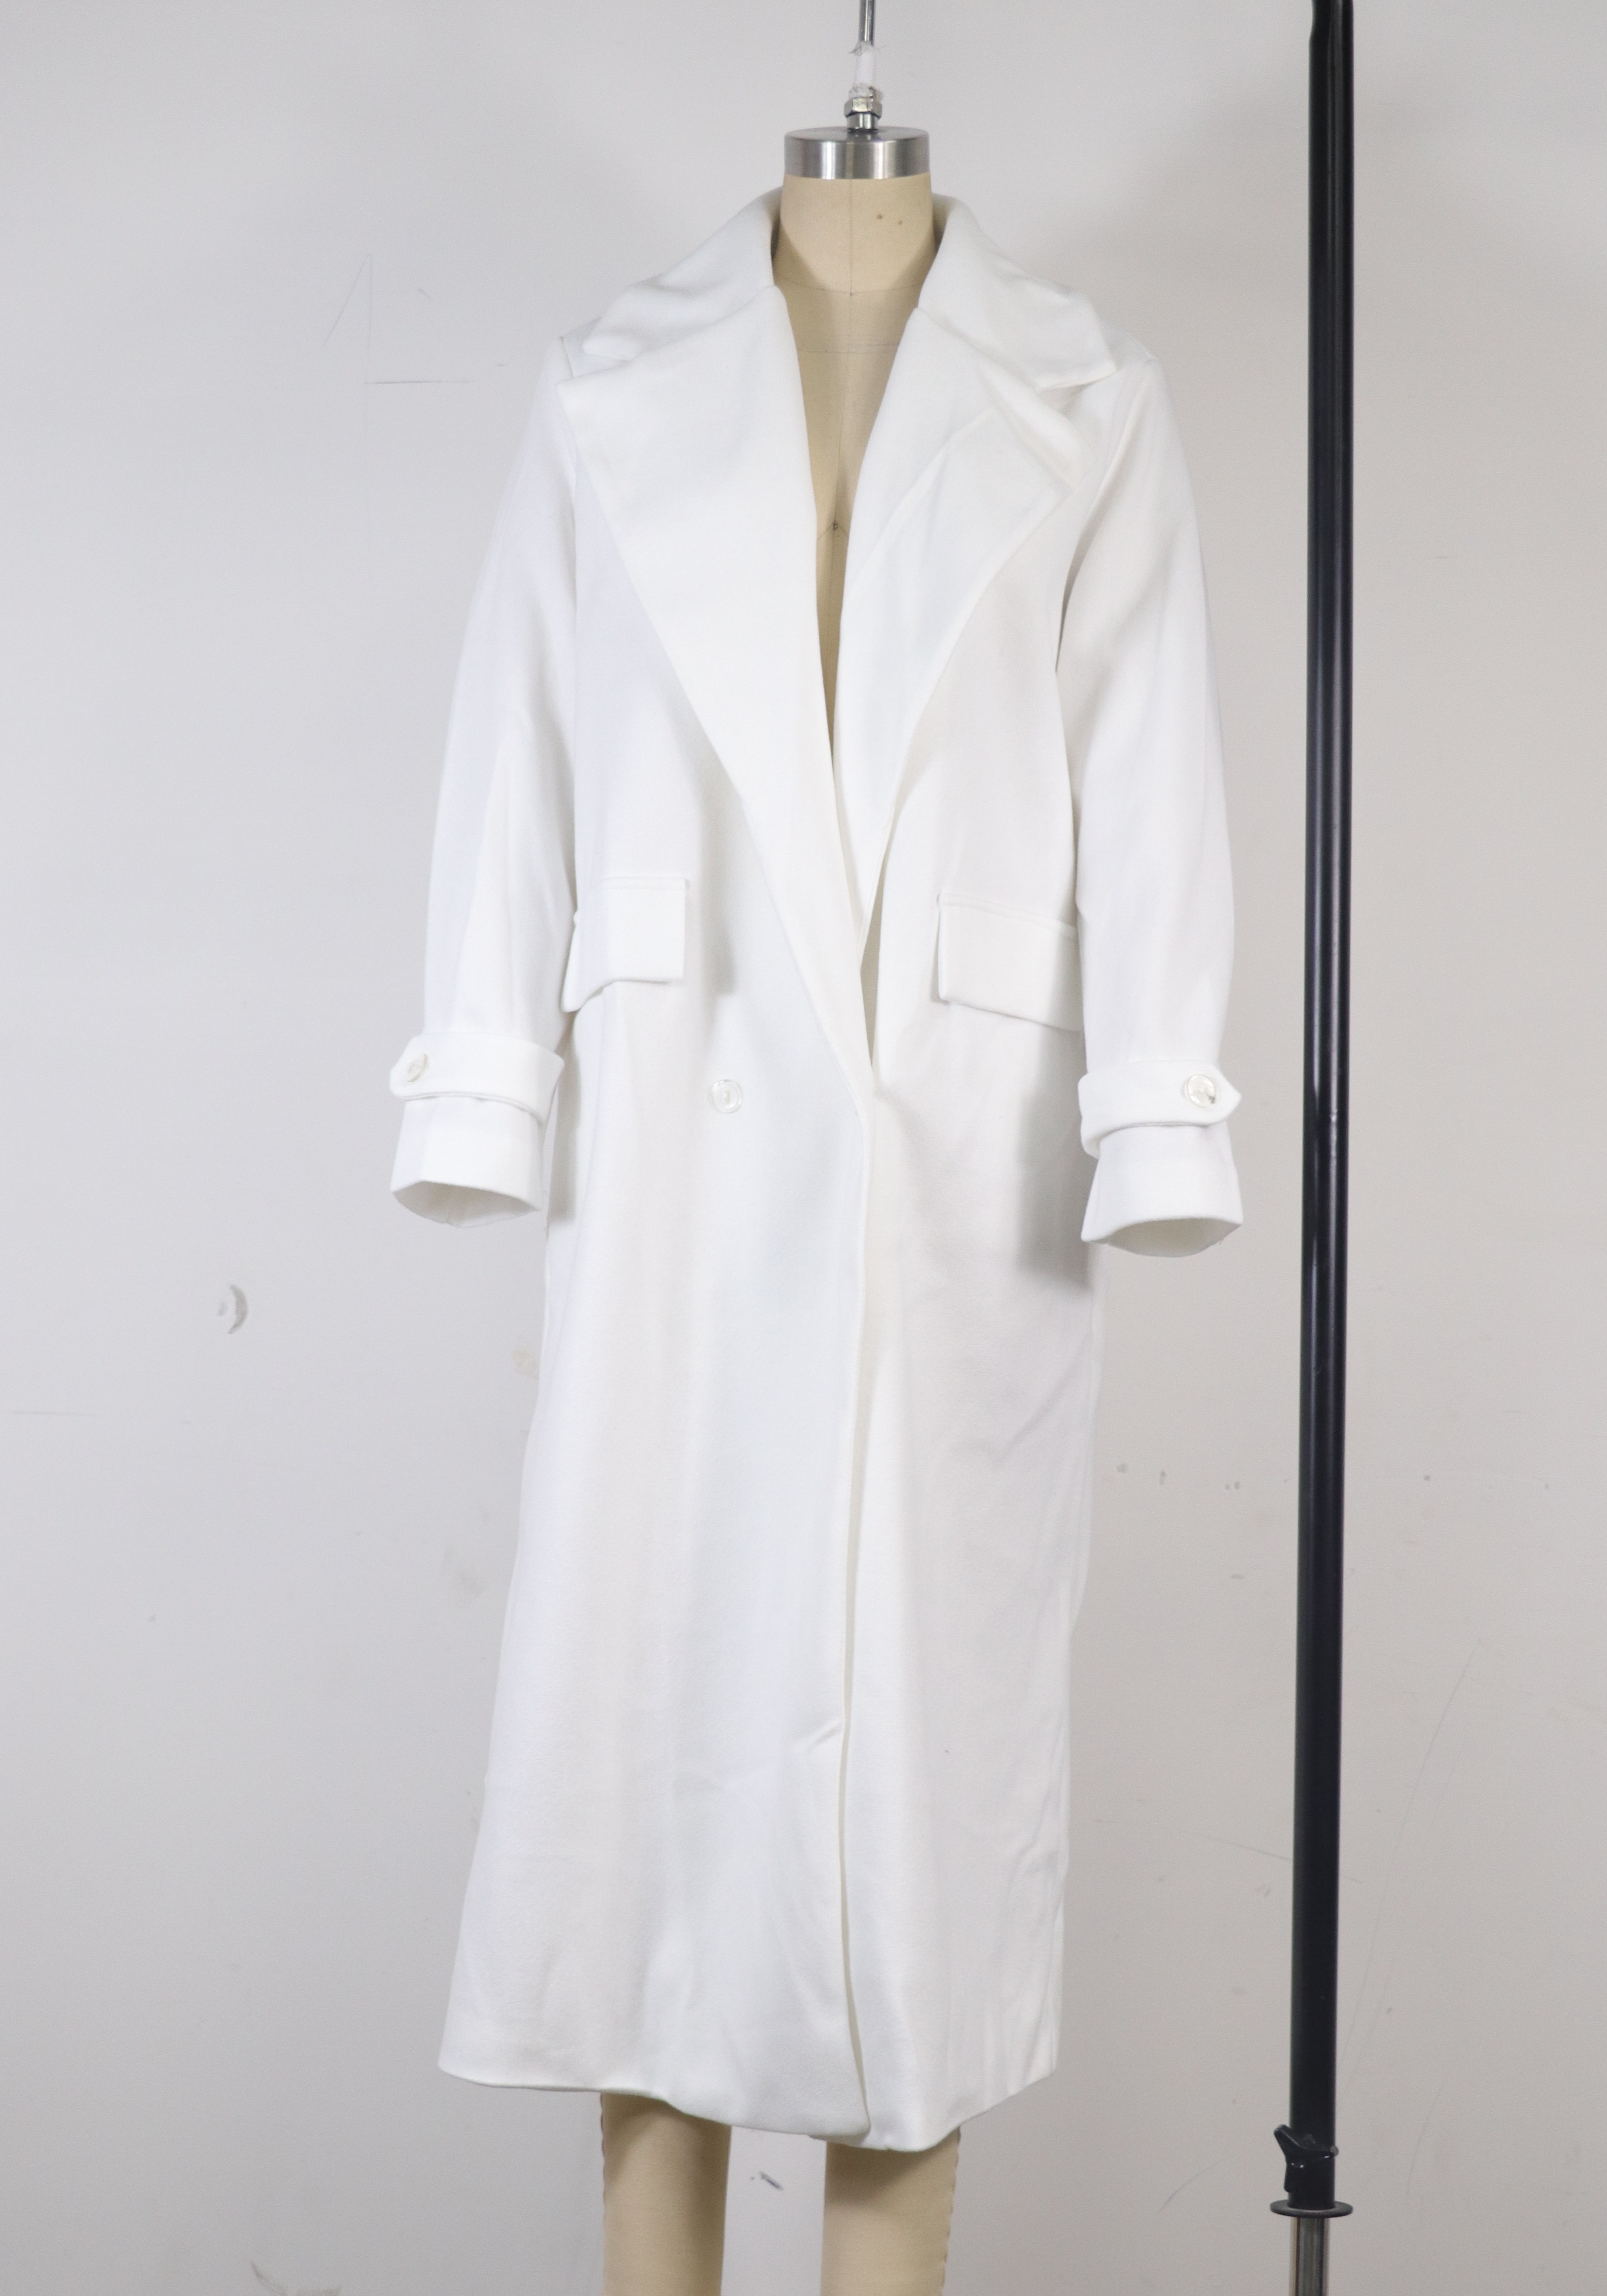 High Quality Fashionable Temperament Mid-Length Woolen Coat - Coats & Jackets - Uniqistic.com